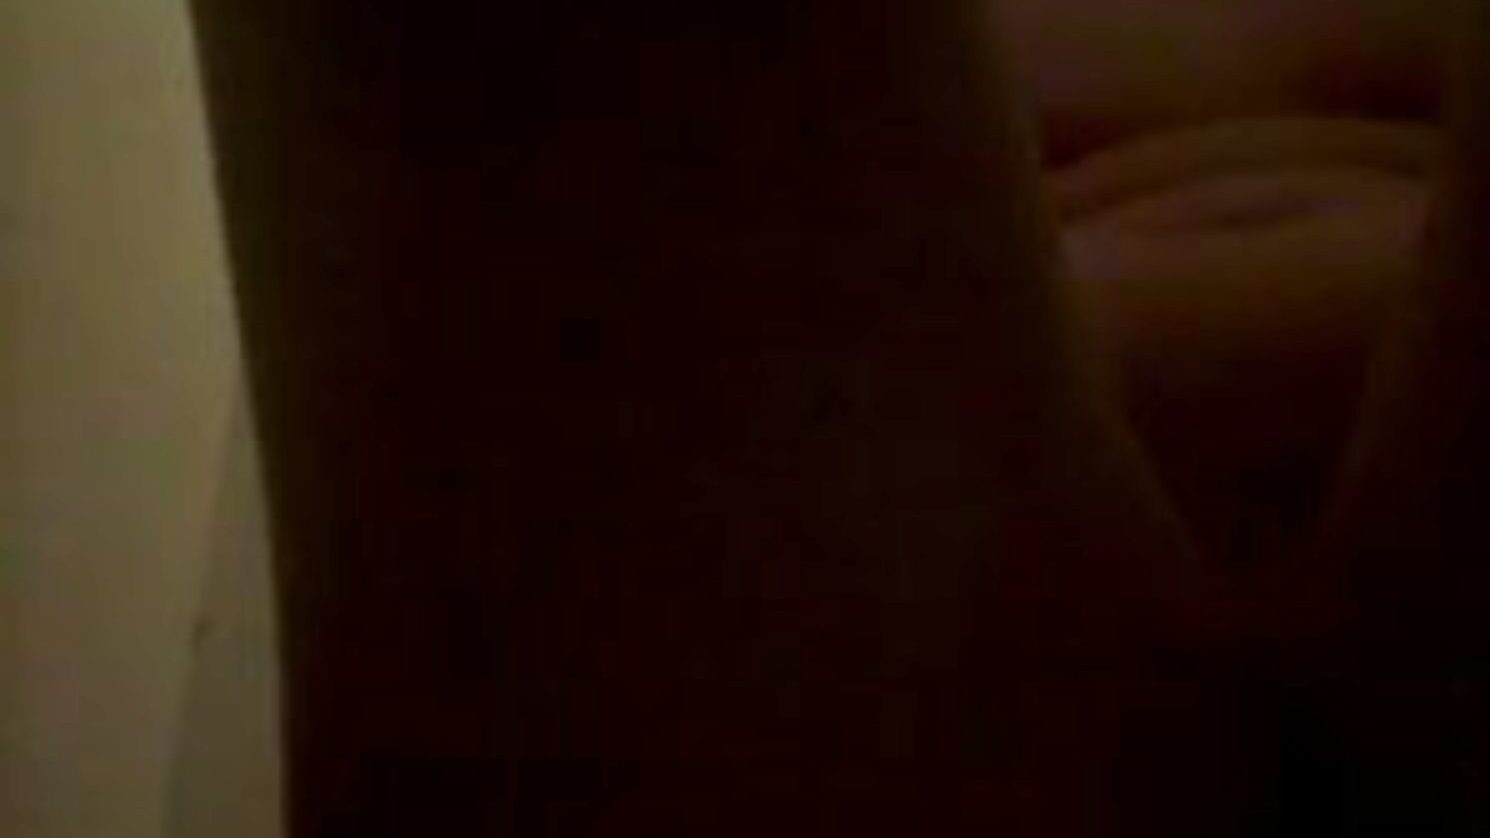 piss et frotte sur le corps, porno pipi gratuit 45: xhamster regarde le clip de piss et frotte sur le corps sur xhamster, le plus gros site de tube orgie avec des tonnes de pisse pipi gratuit et des scènes de films porno maison